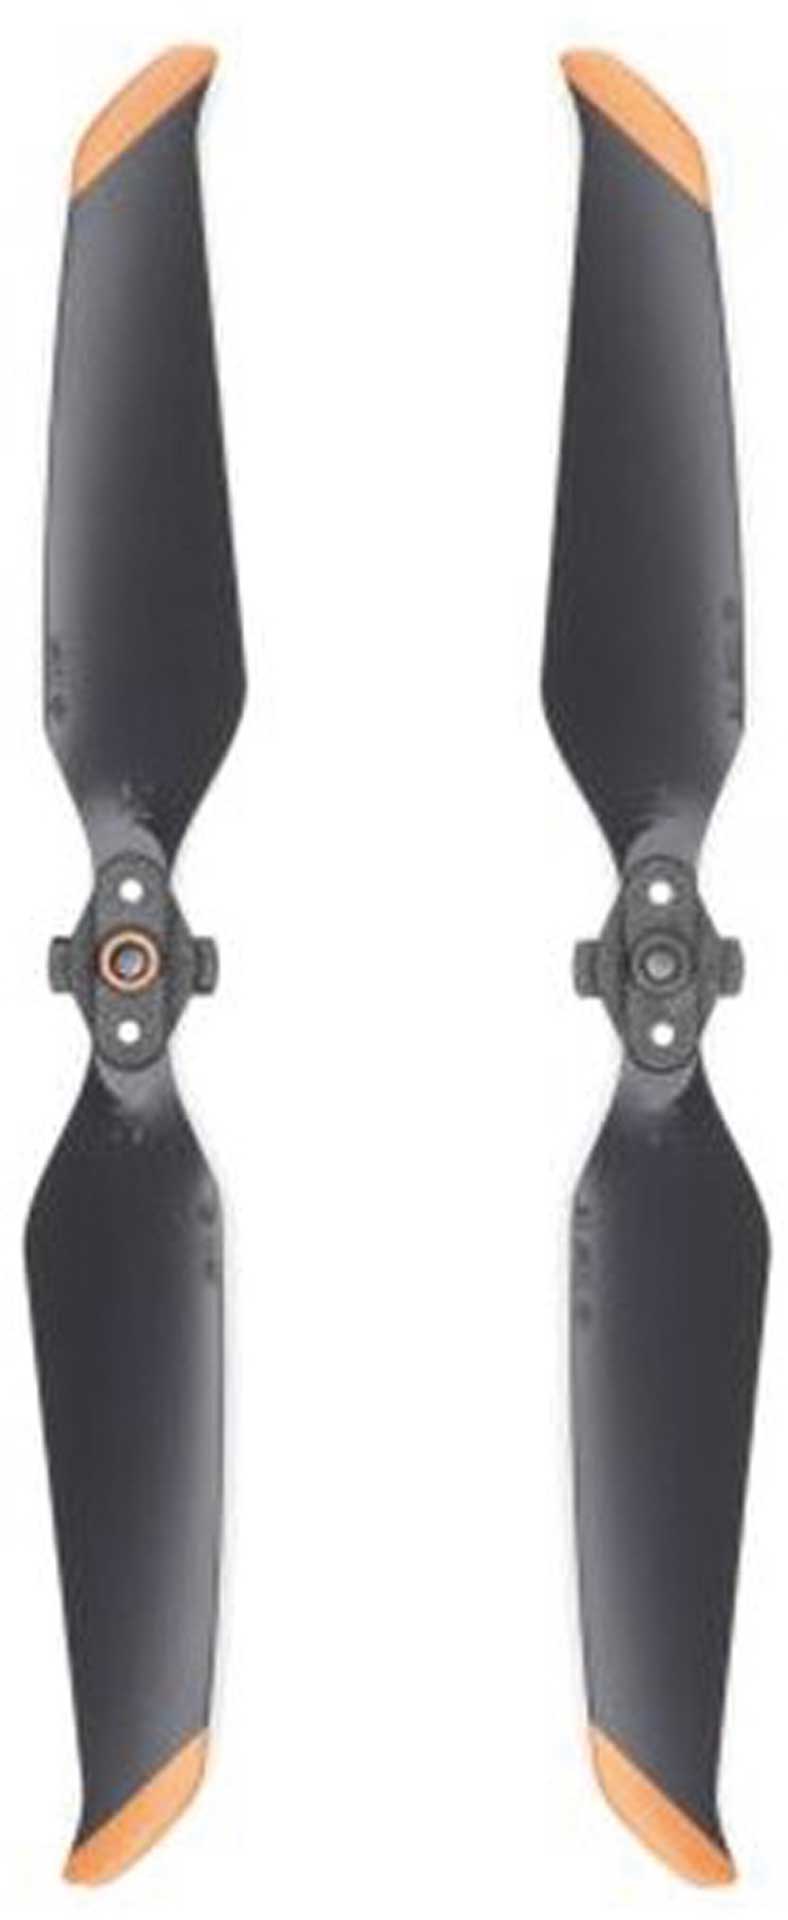 DJI Air 2S - Low noise propellers (pair)